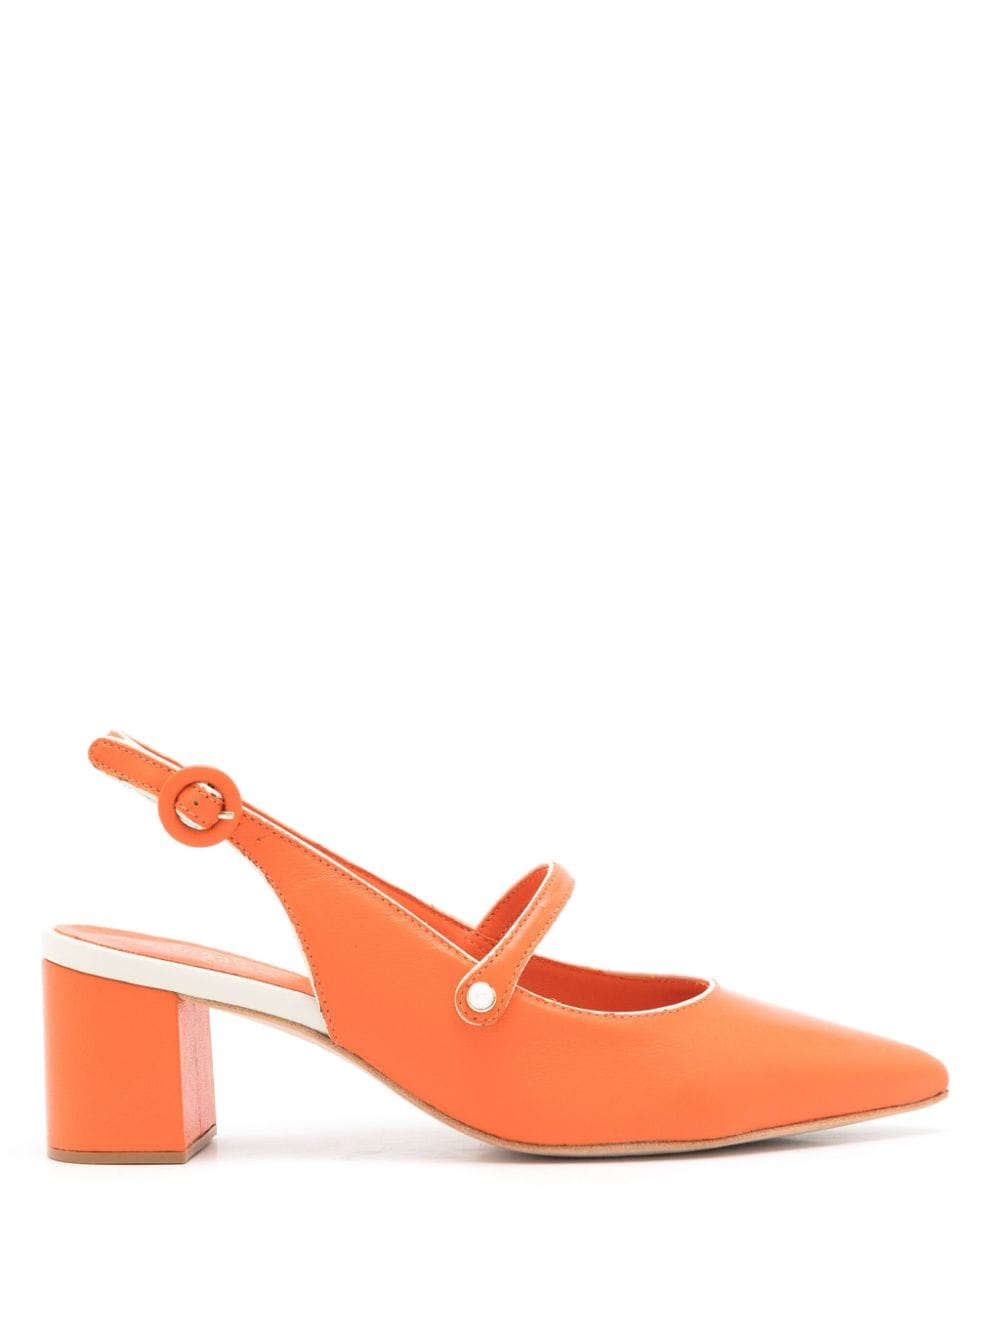 Sarah Chofakian Bertha 40mm pointed-toe leather pumps - Orange von Sarah Chofakian